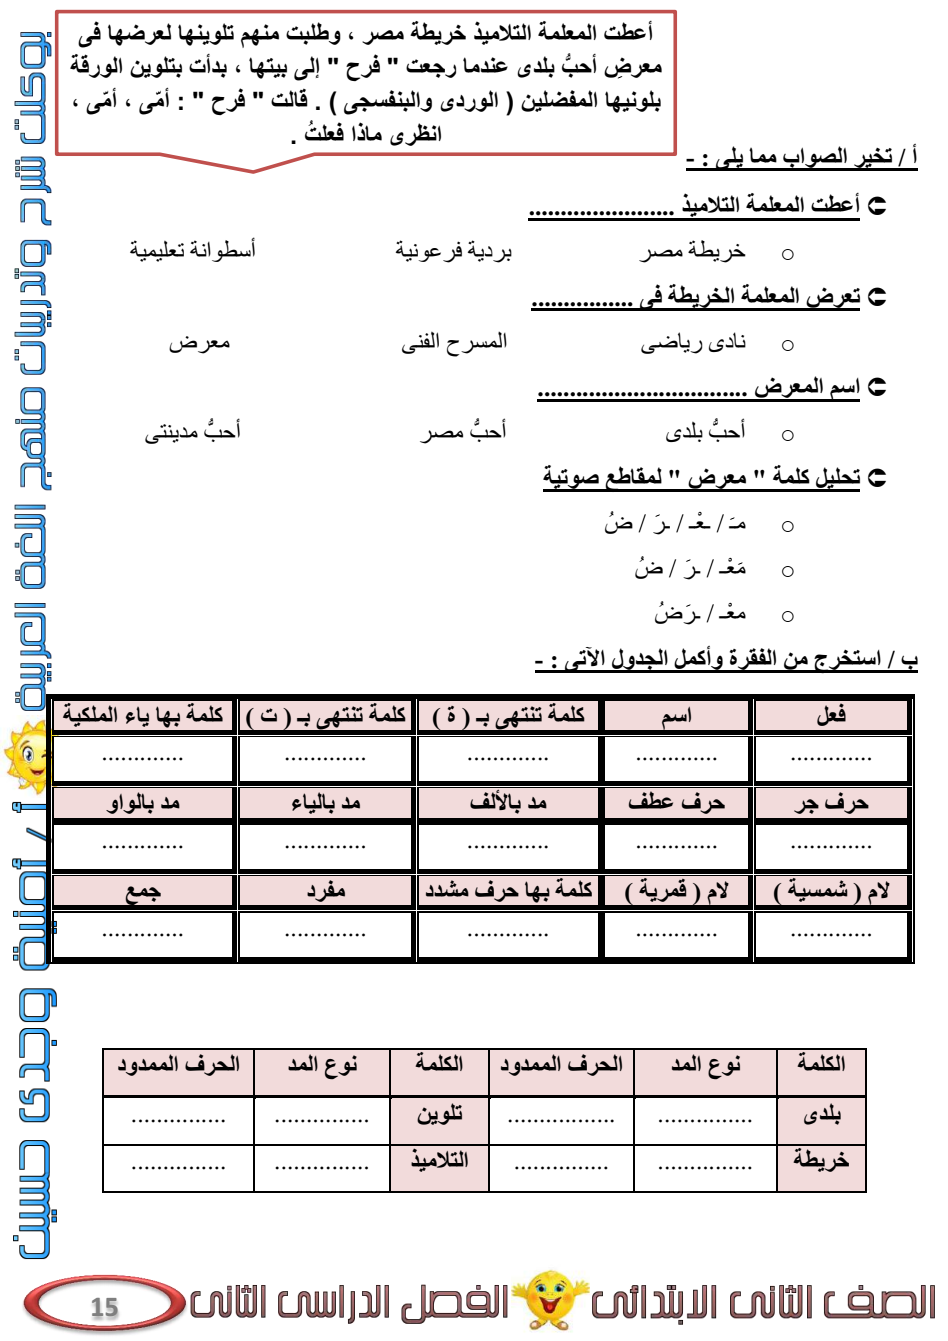 مذكرة لغة عربية للصف الثاني الابتدائي الترم الثاني